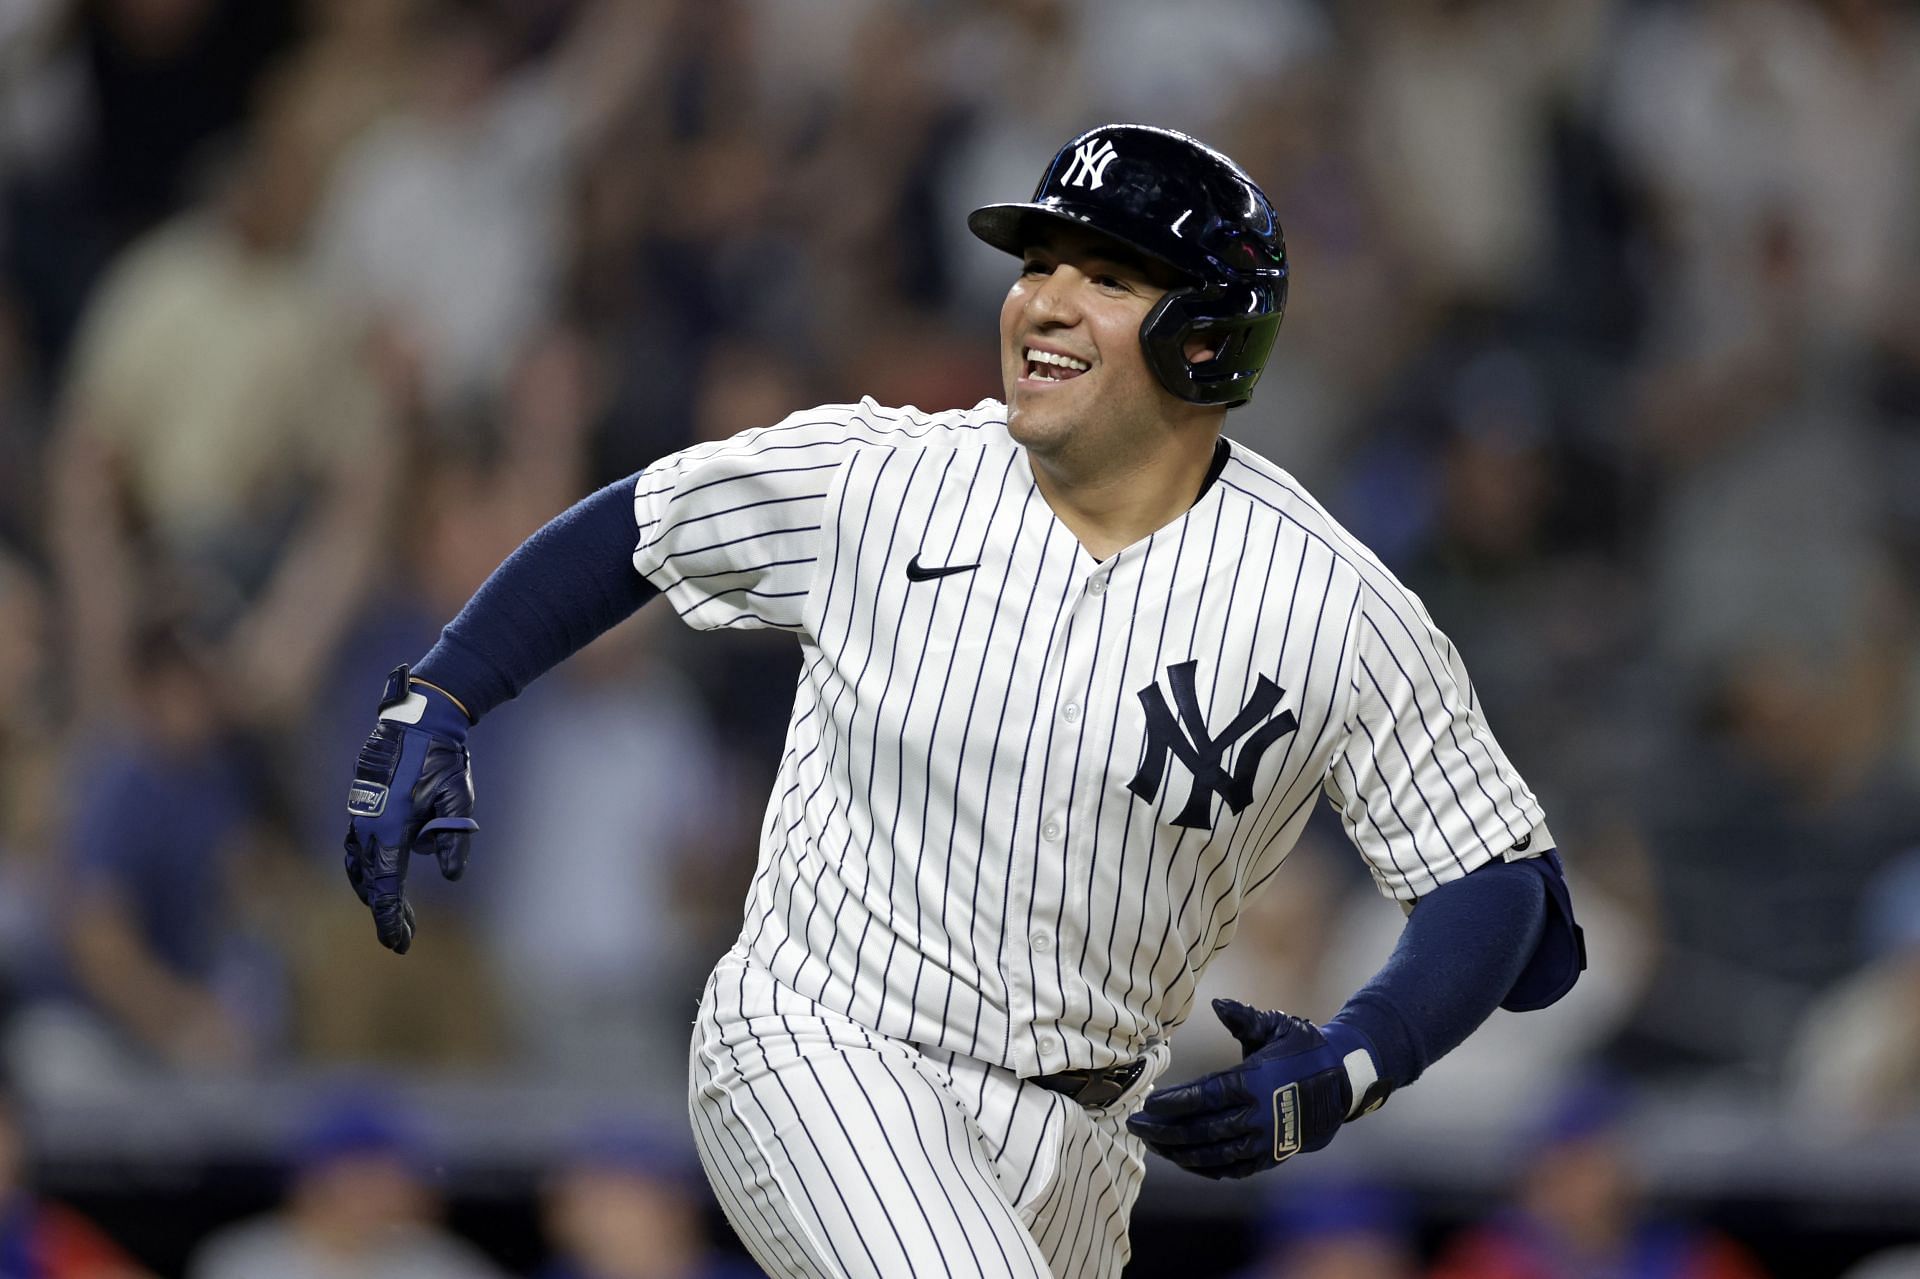 New York Yankees catcherJose Trevino was thrilled to meet Derek Jeter